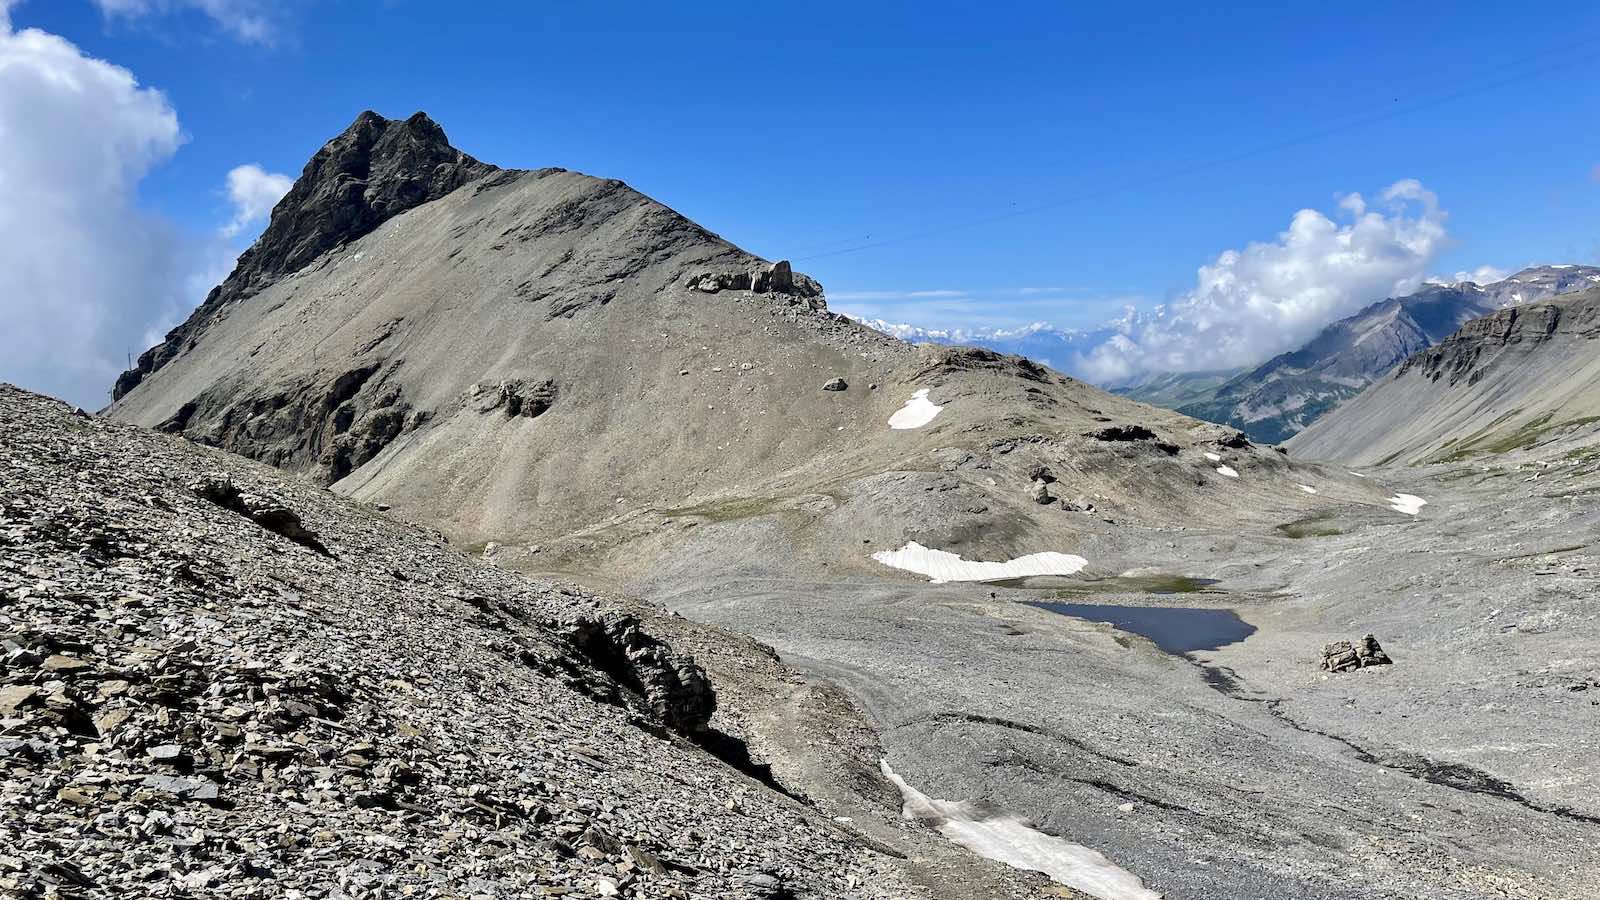 Steinig-felsiger Aufstieg zur Gipfelstation am Plaine Morte Gletscher